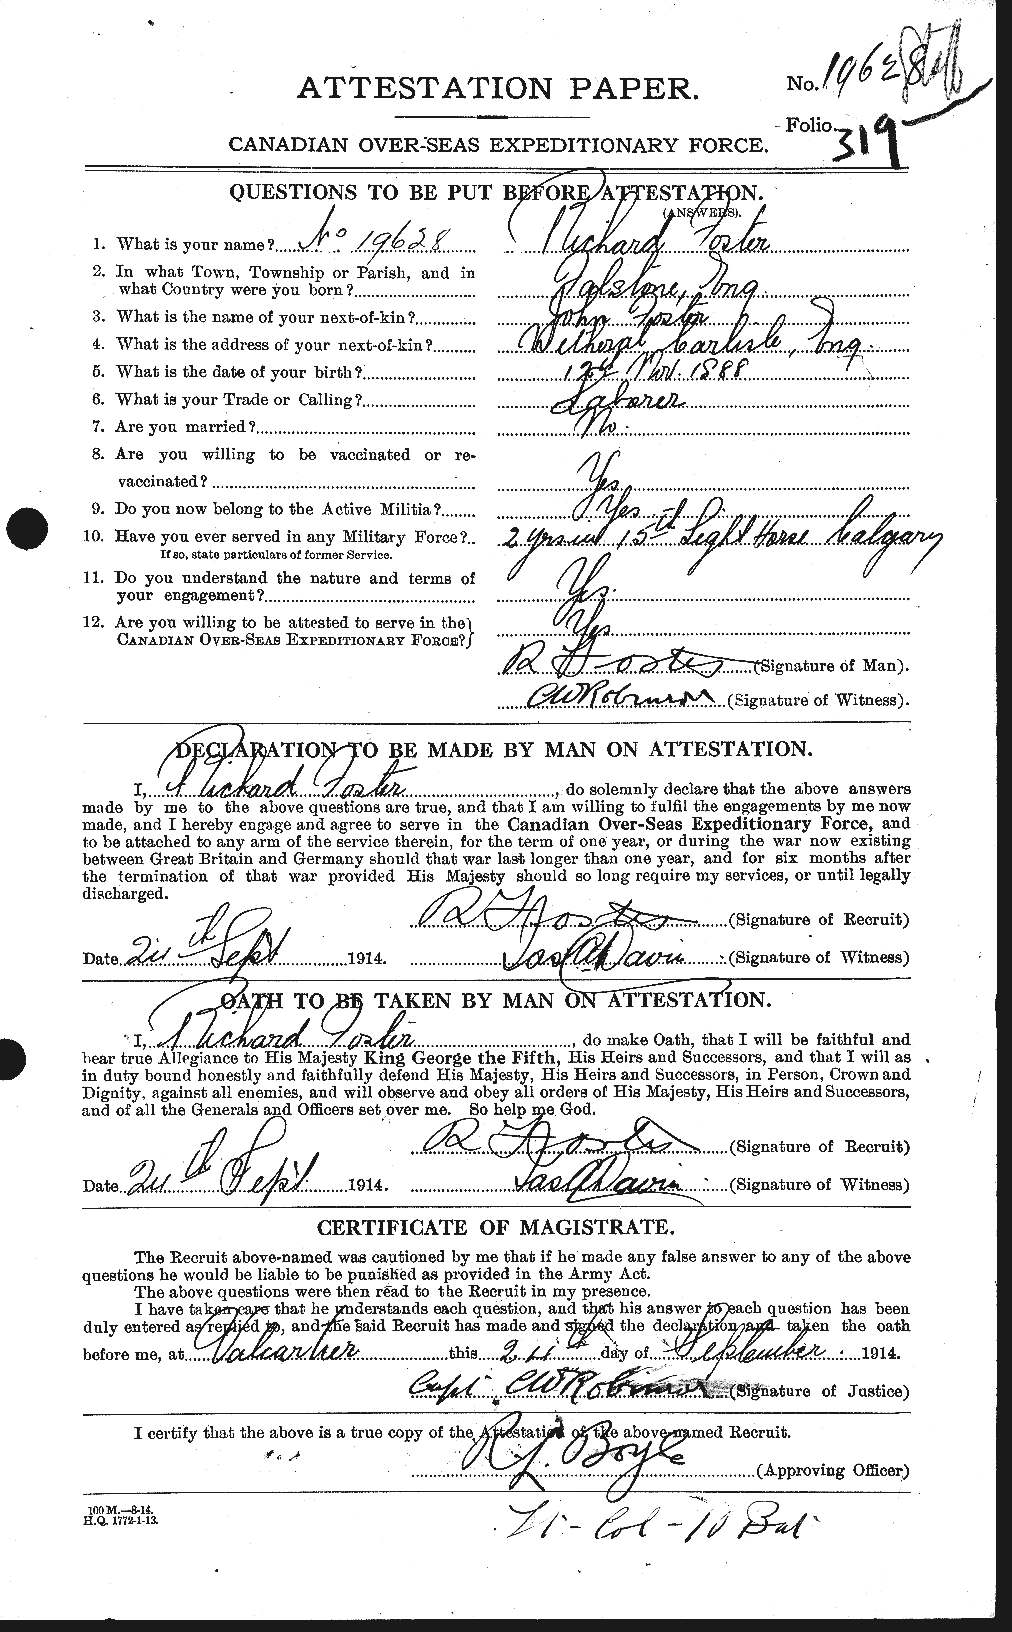 Dossiers du Personnel de la Première Guerre mondiale - CEC 335156a